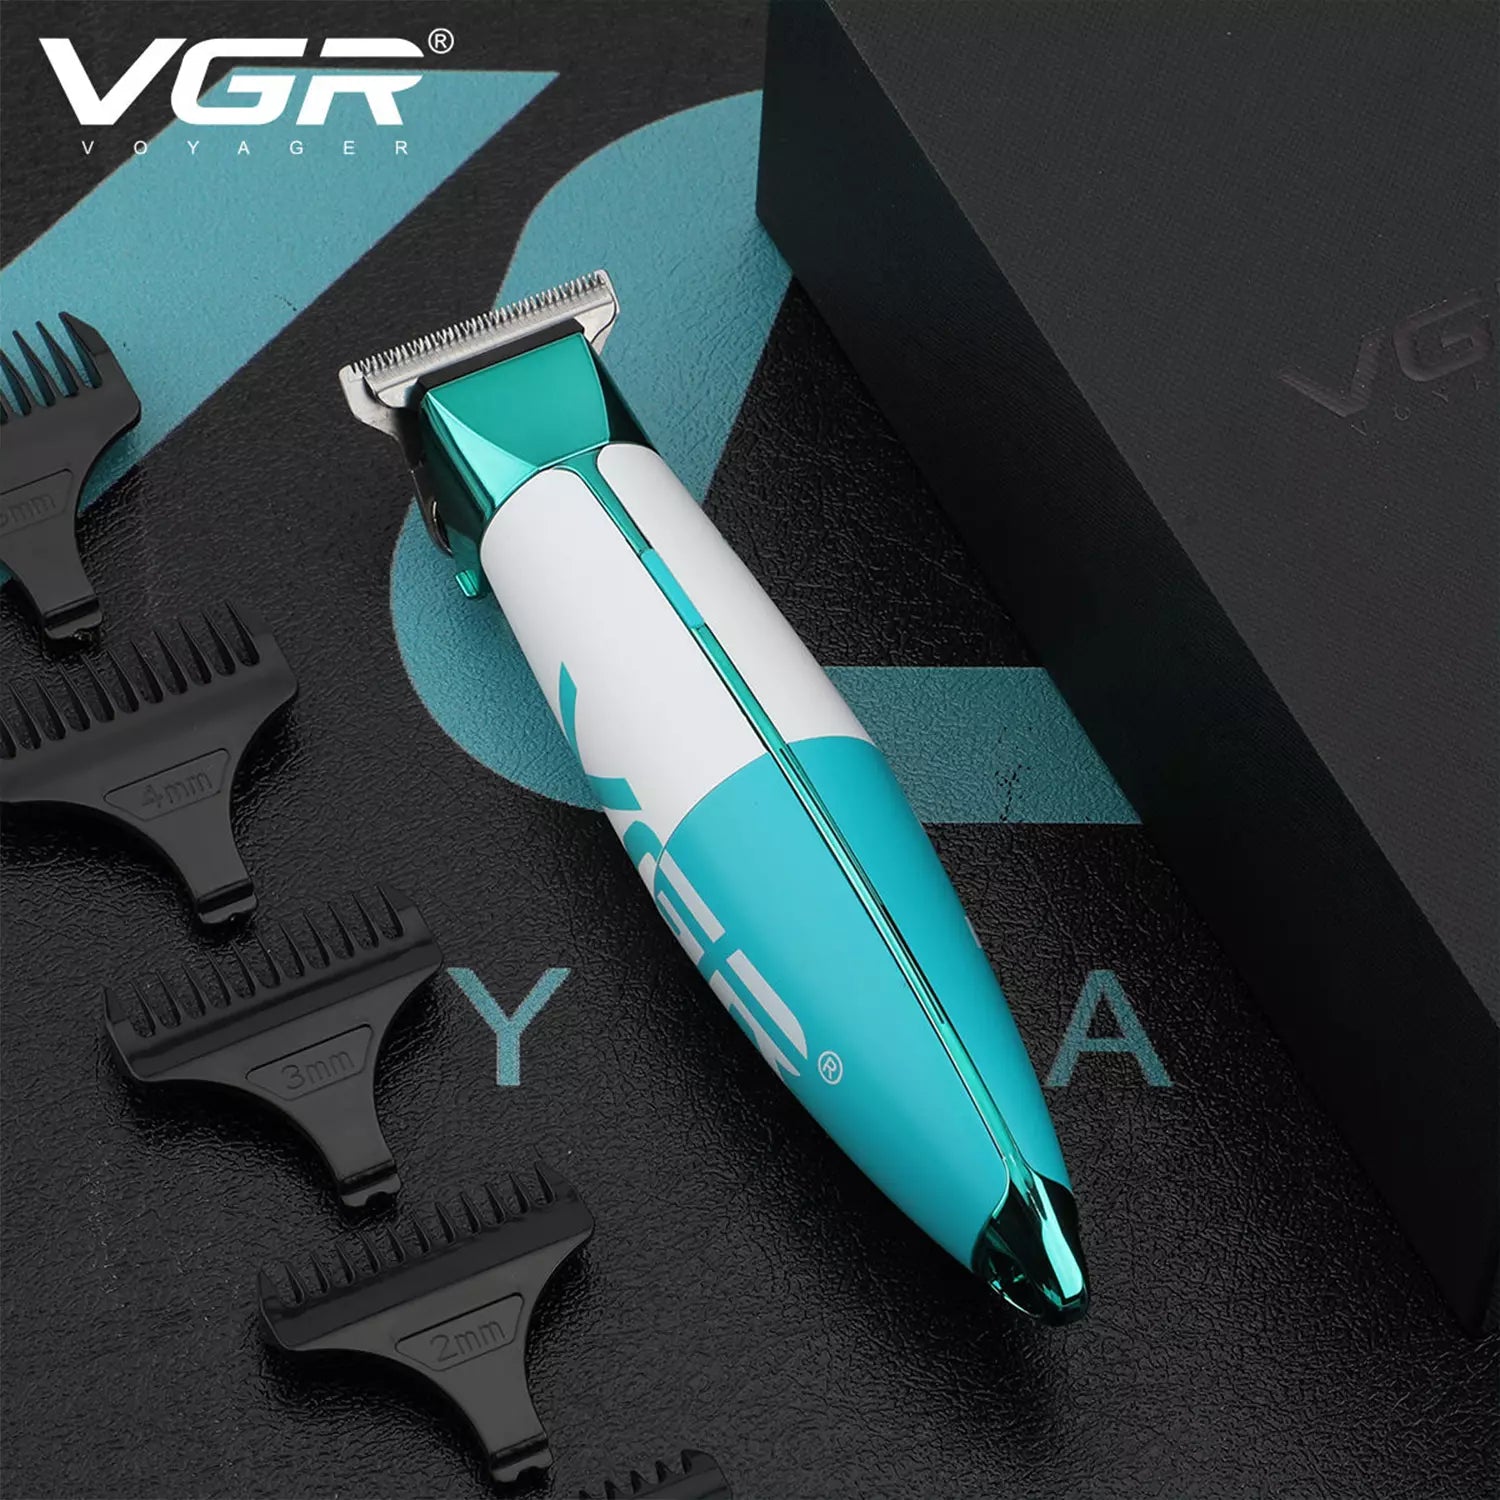 VGR, VGRindia, VGRofficial, VGR V-958